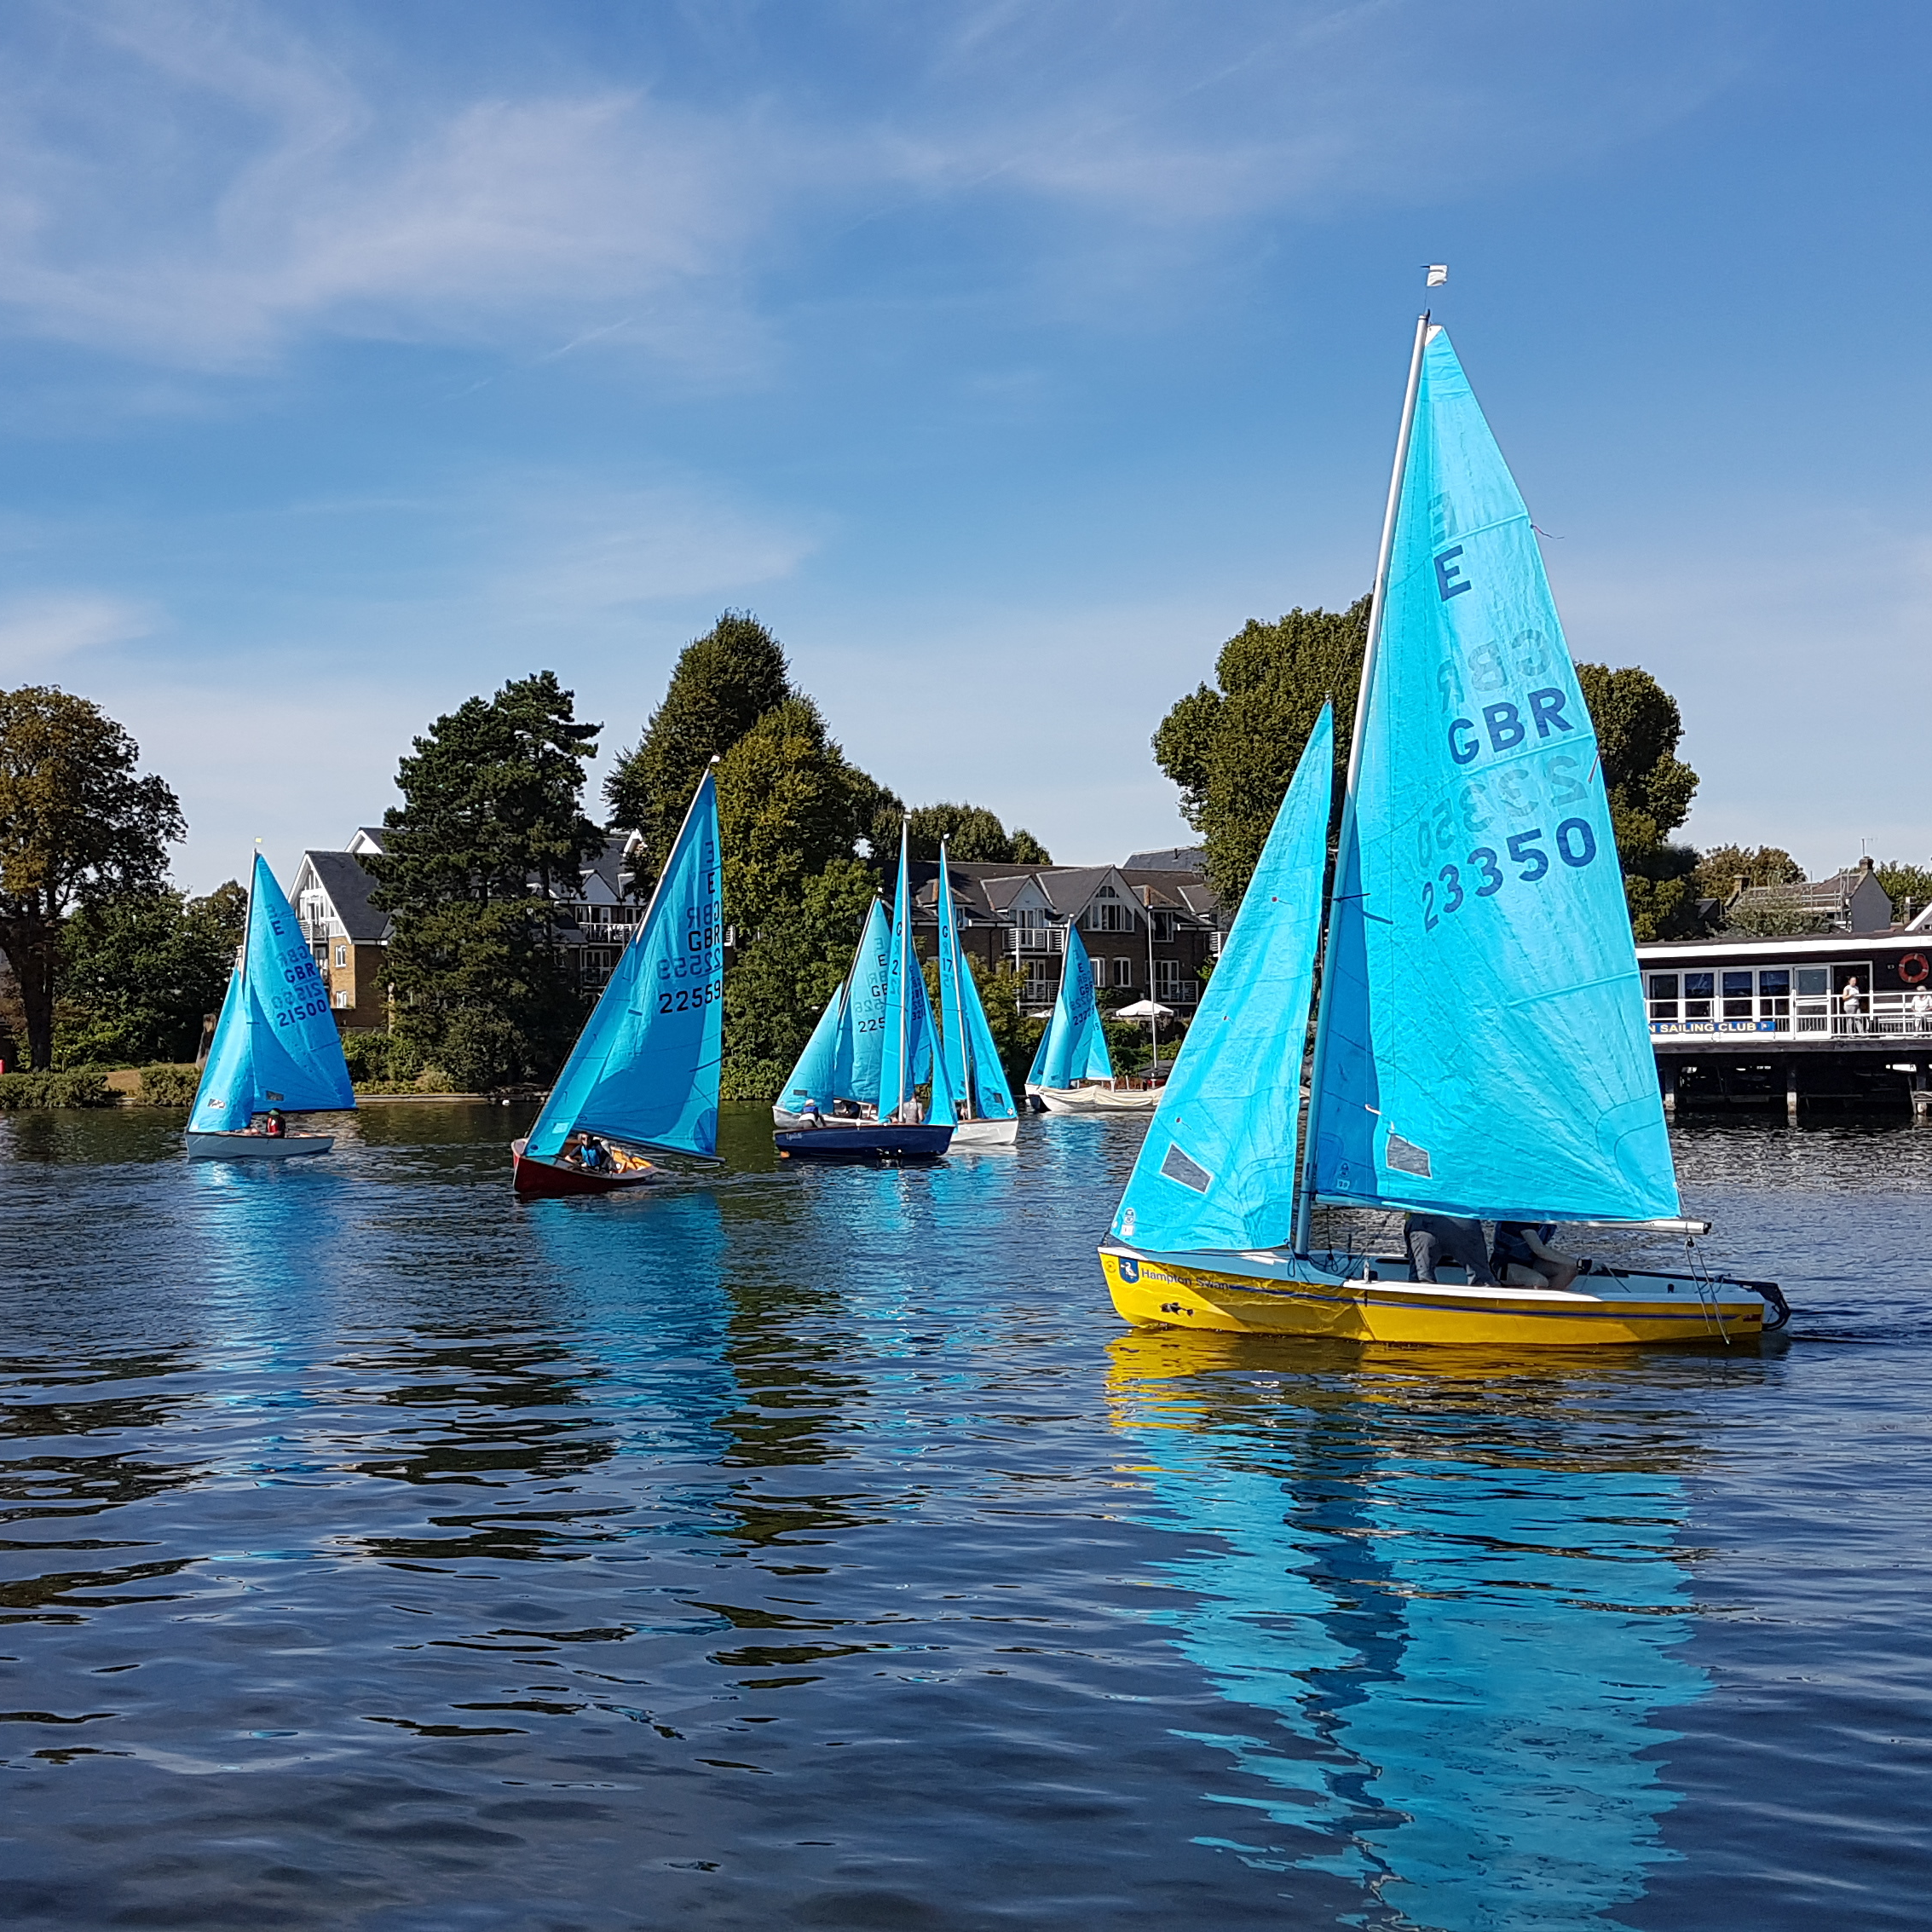 Blue sails